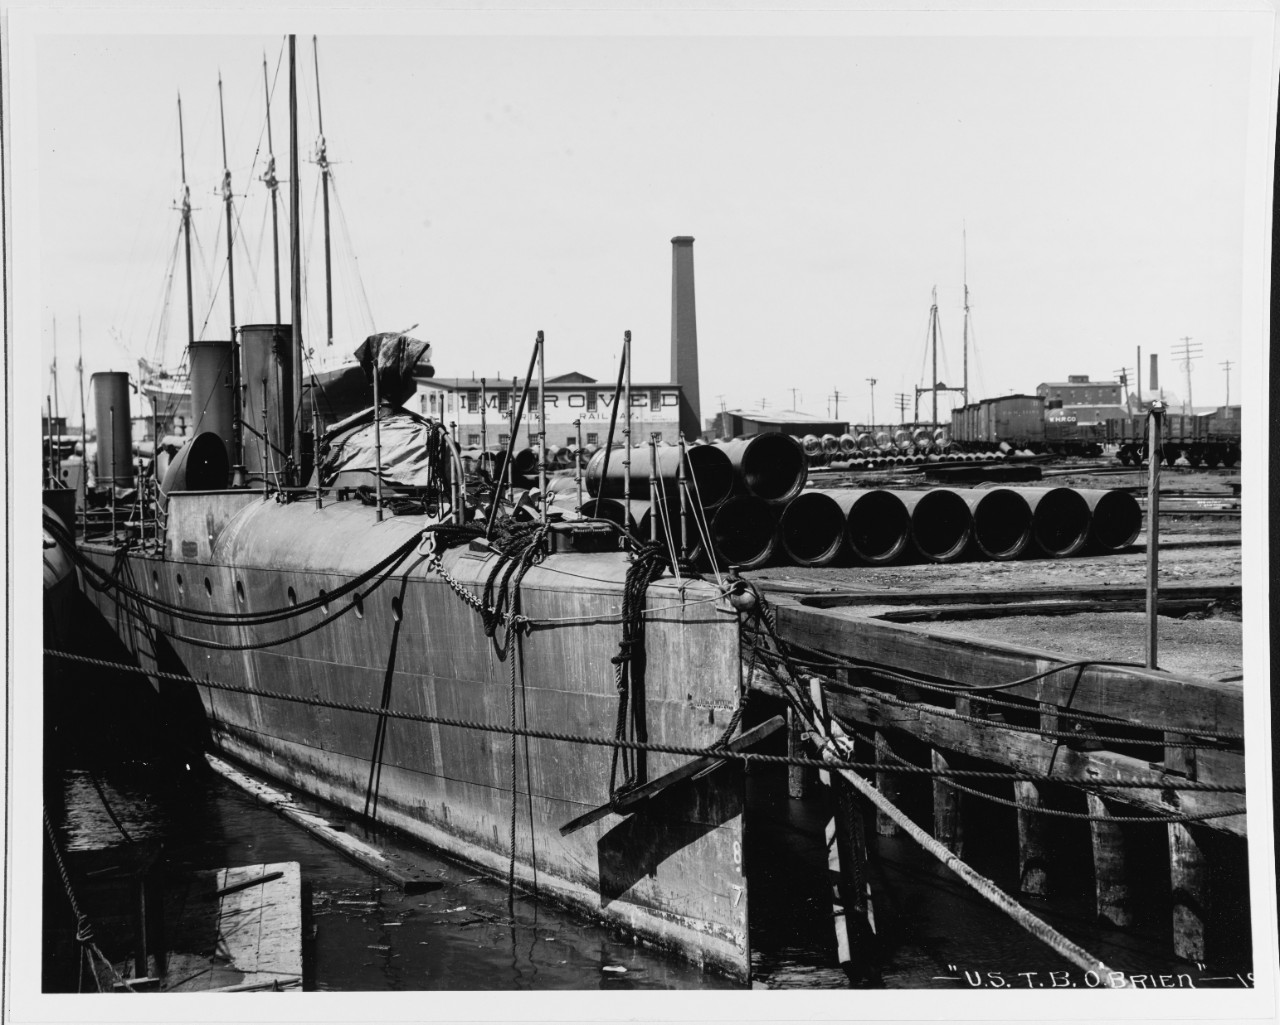 USS O'BRIEN (TB-30), in 1902.